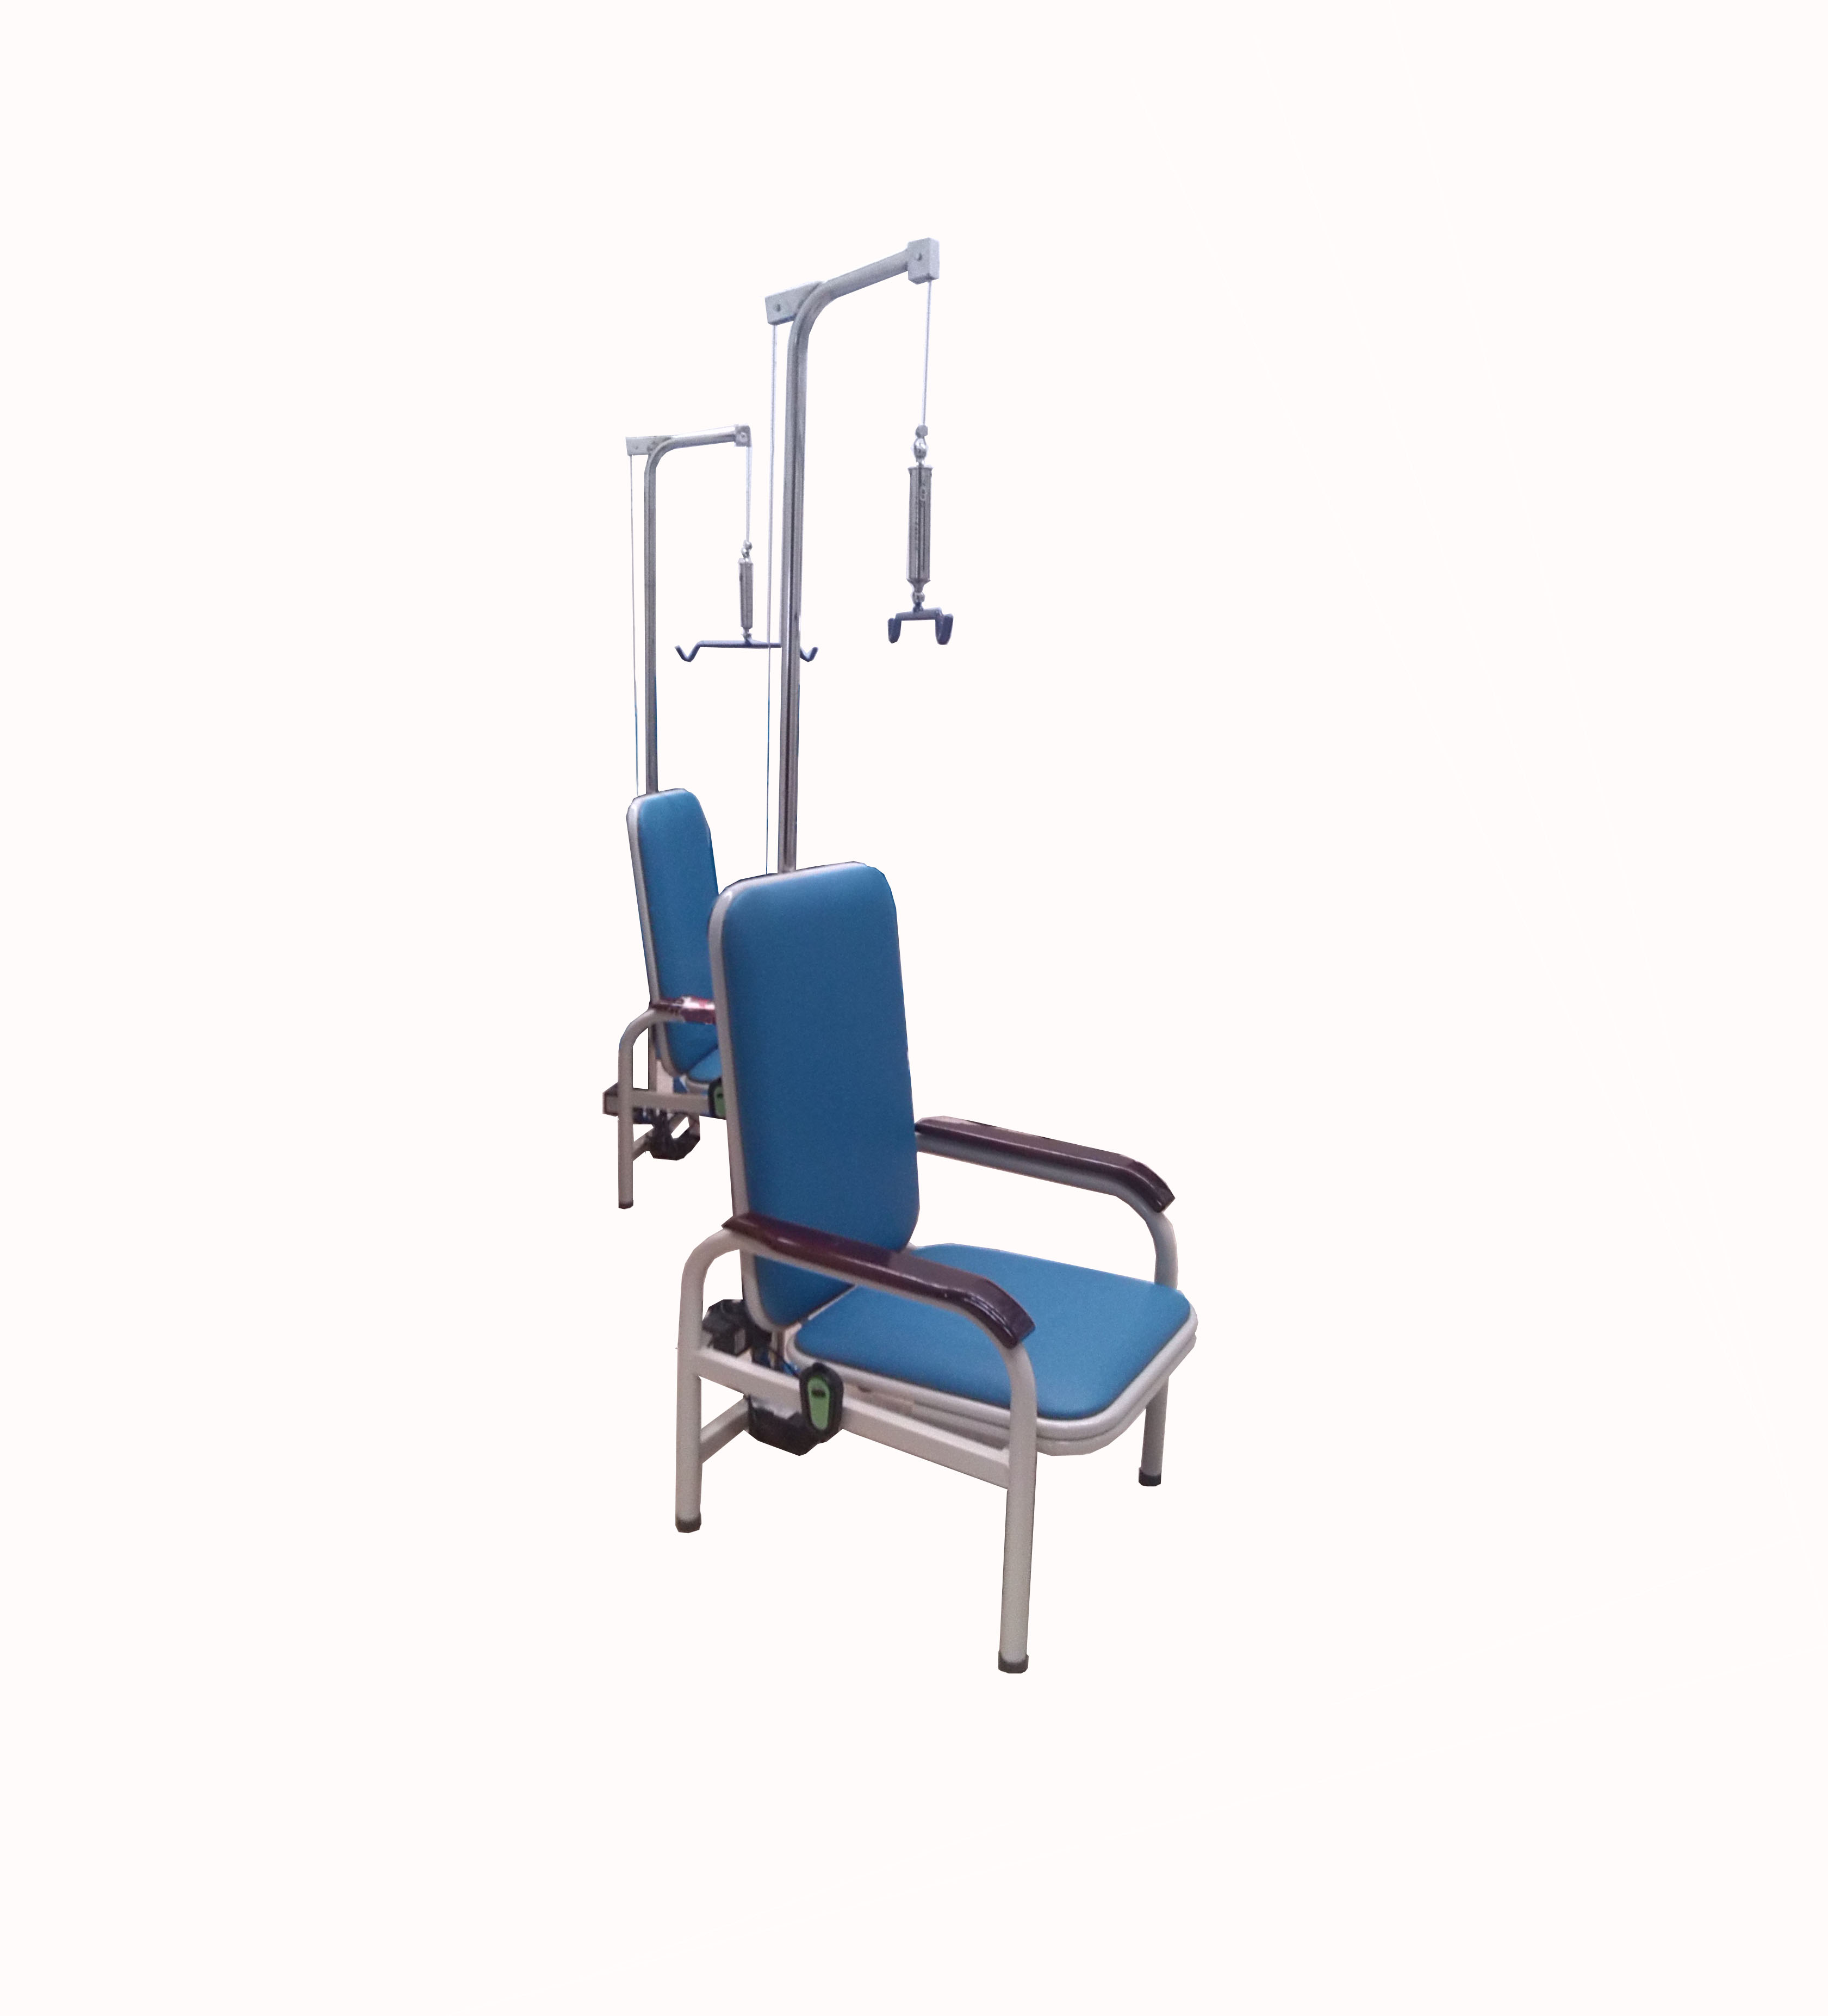 供应电动颈椎牵引椅 牵引椅厂家  牵引椅厂家直销 优质供应商-牵引椅厂家  牵引椅价格 颈椎牵引椅电动